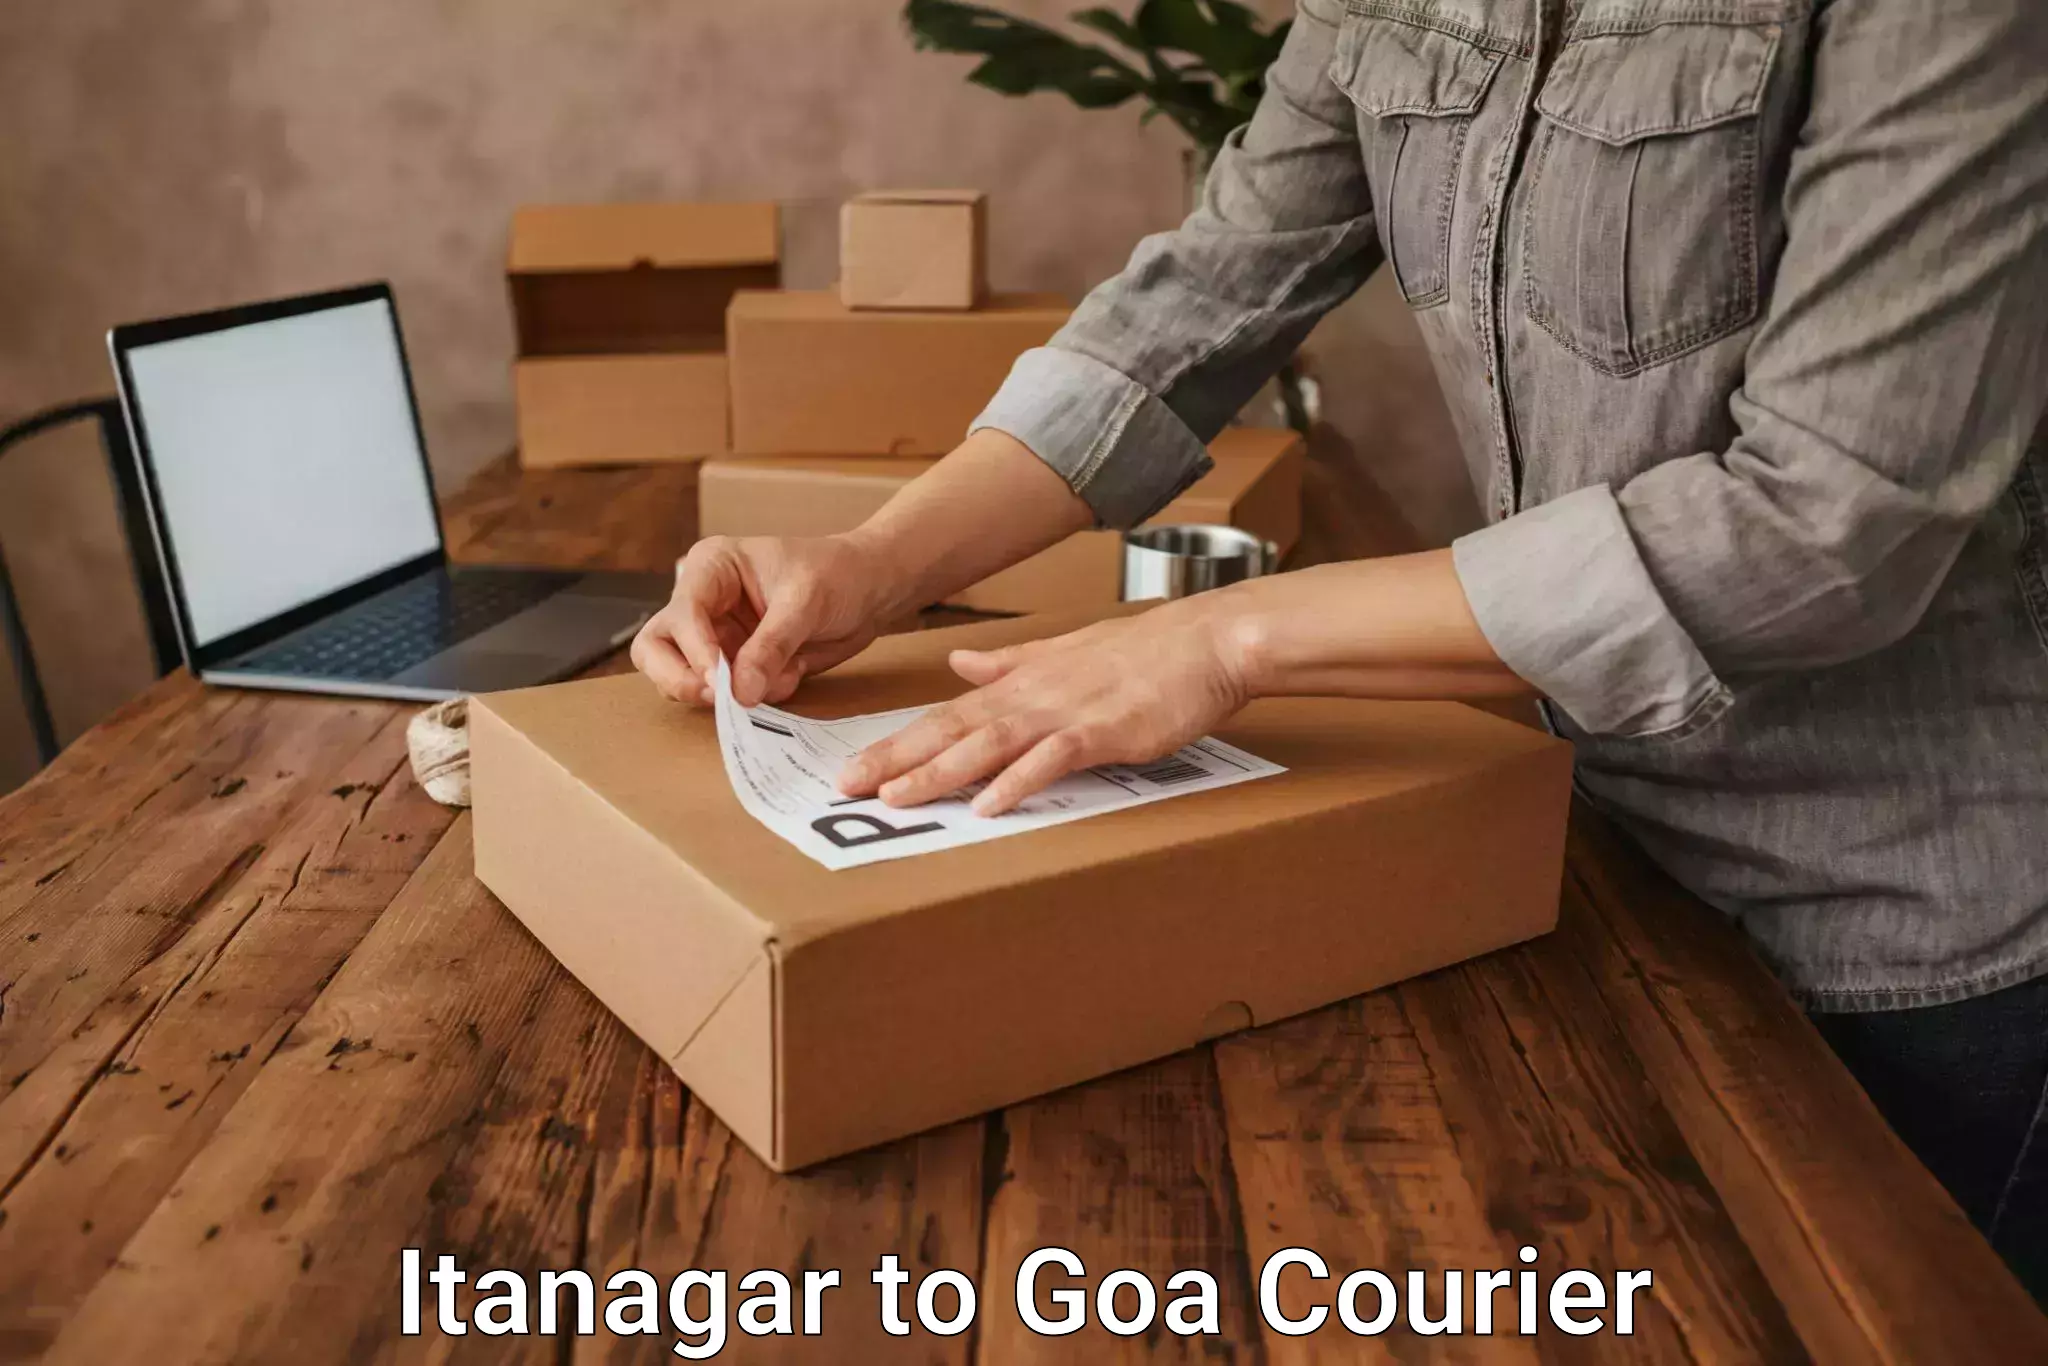 High-capacity parcel service Itanagar to Goa